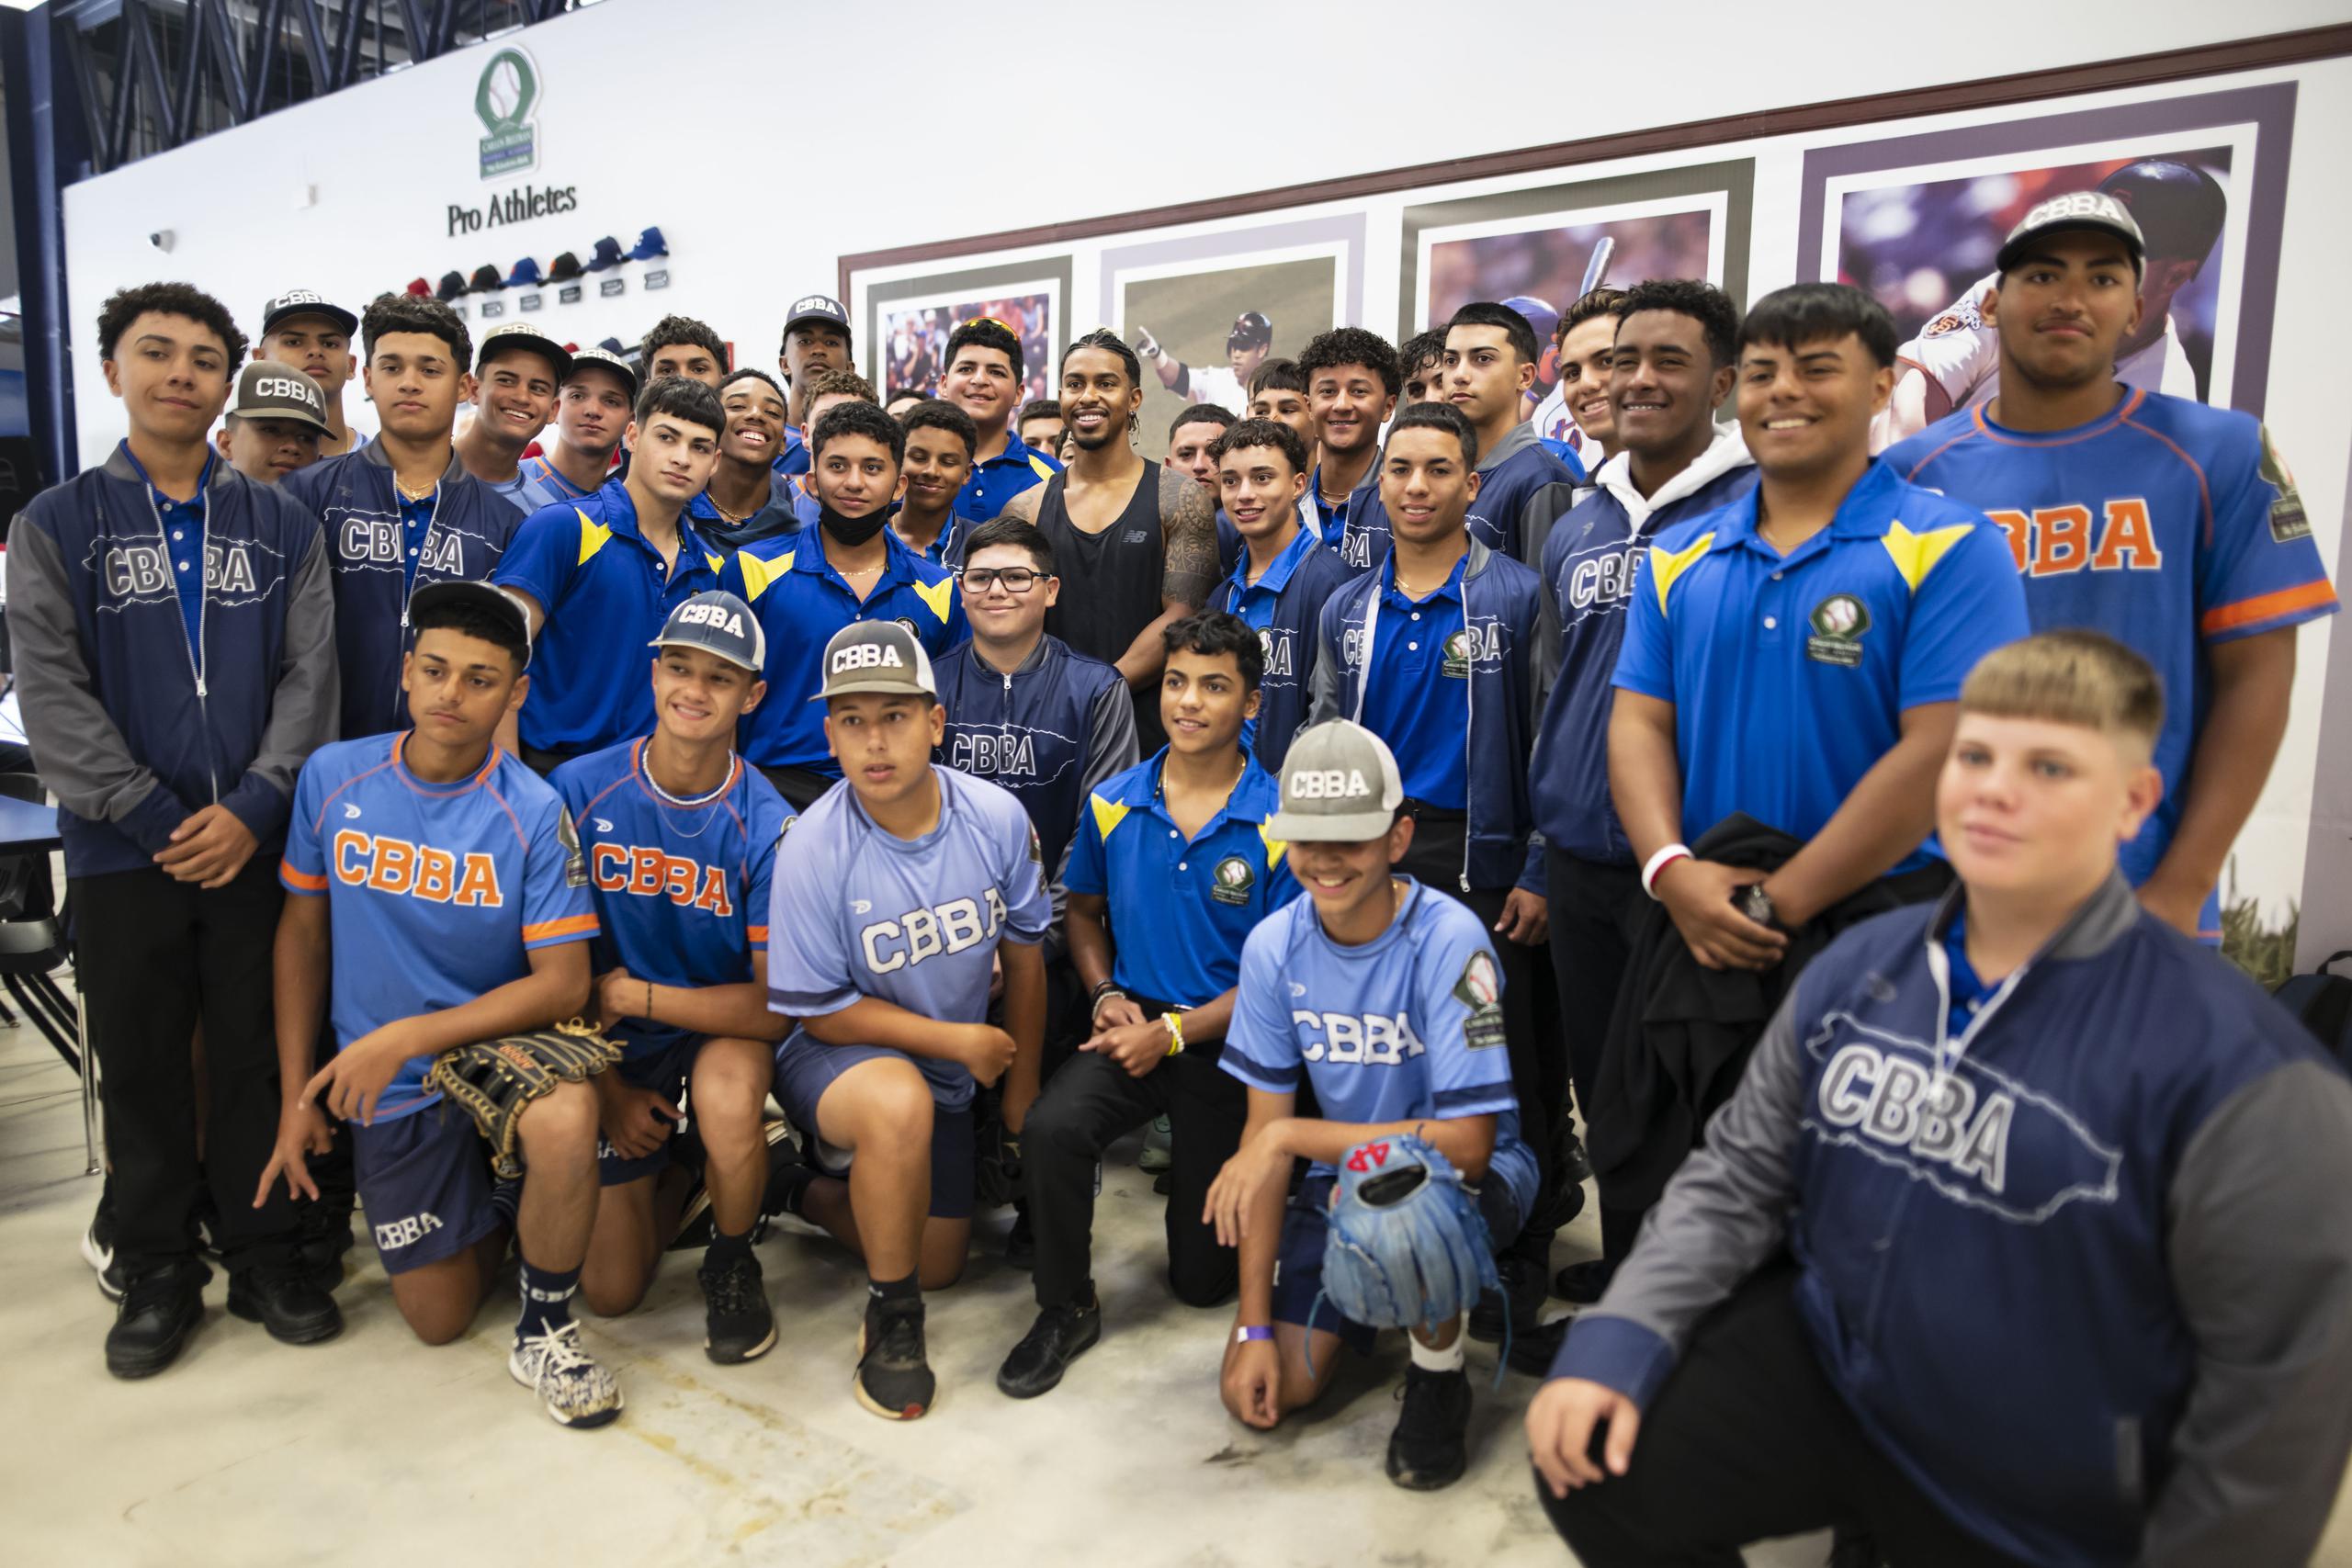 Francisco Beltrán acompaña en la foto a estudiantes de la escuela especializada en béisbol de Carlos Beltrán.